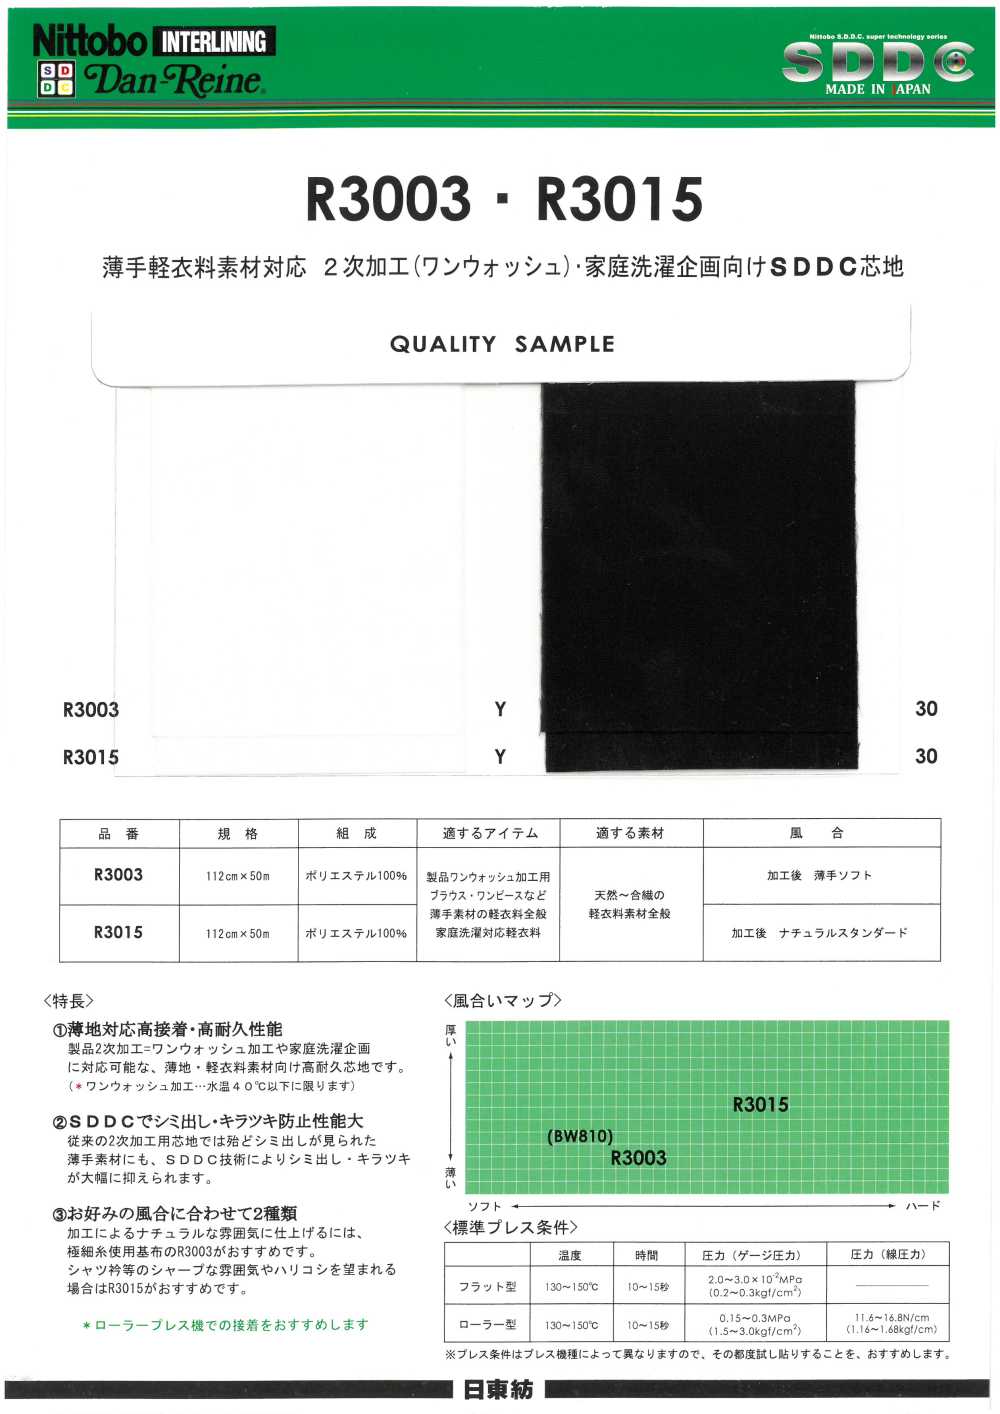 R3003 Danlaine Materiale Per Abbigliamento Sottile E Facile Compatibile SDDC Interlining Tipo Naturale 15D[Interfodera] Nittobo